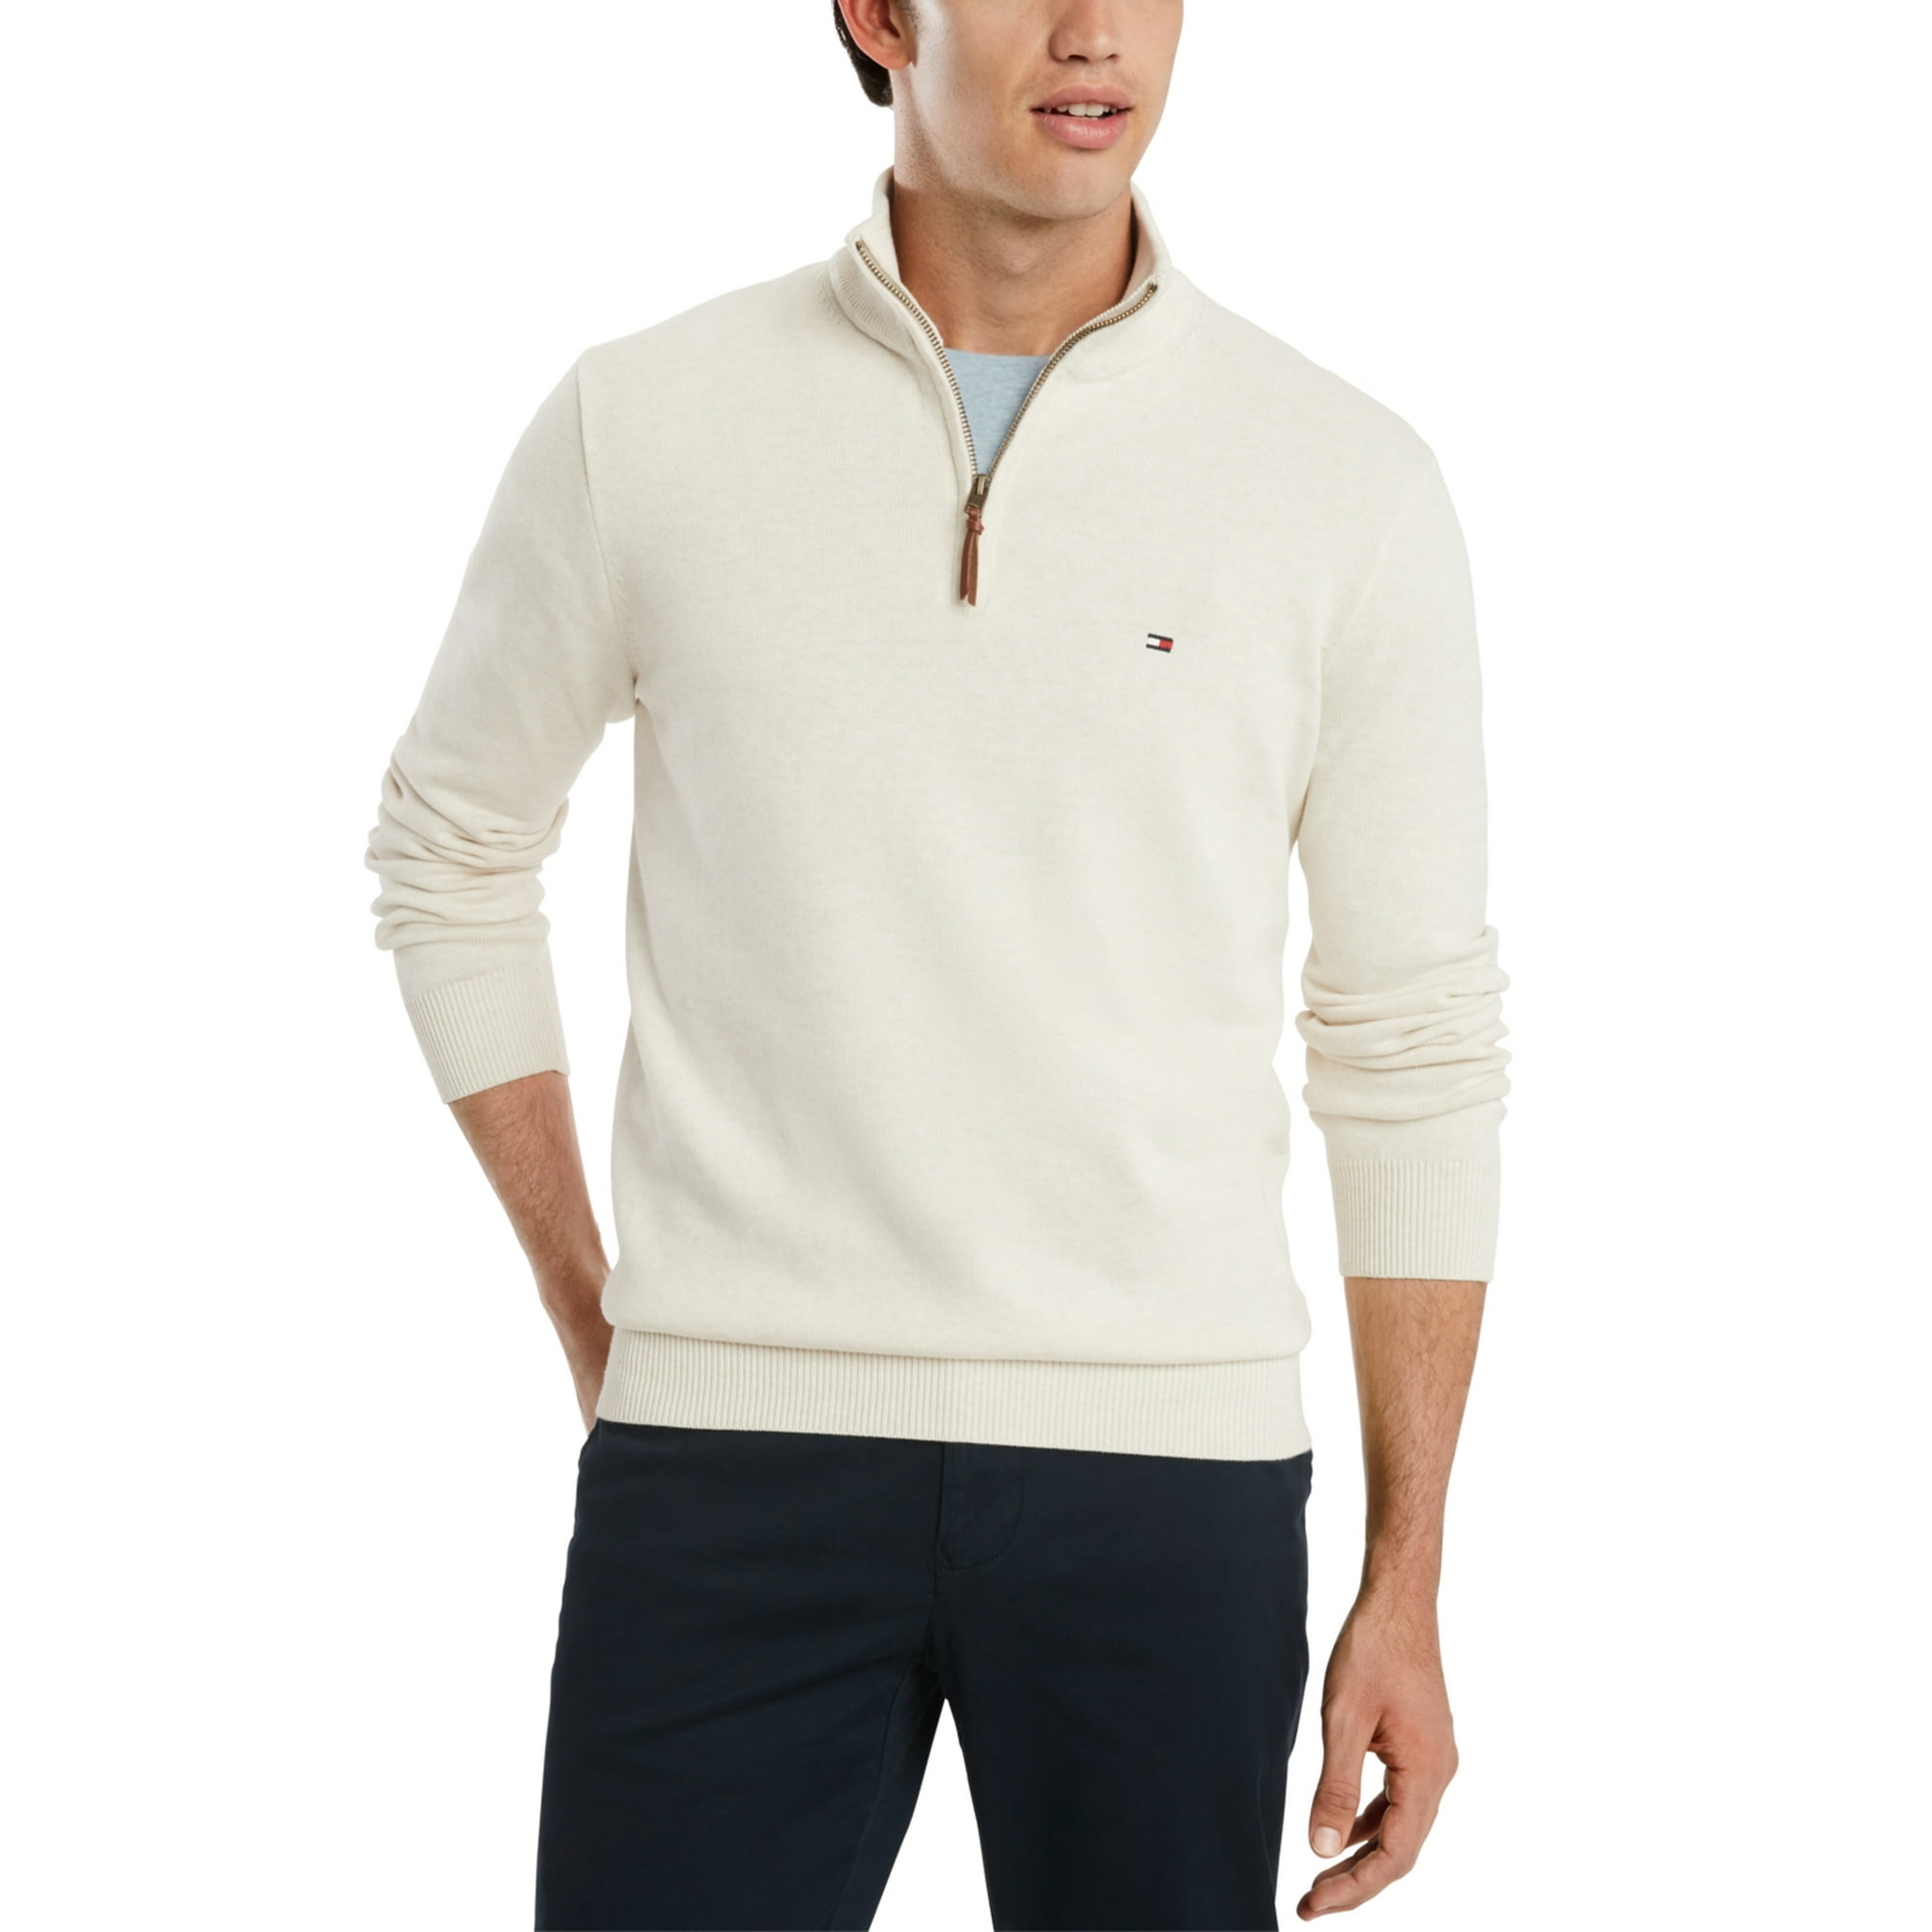 Falde tilbage rig planer Tommy Hilfiger Men's Signature Solid Quarter Zip Sweater White Size Large -  Walmart.com